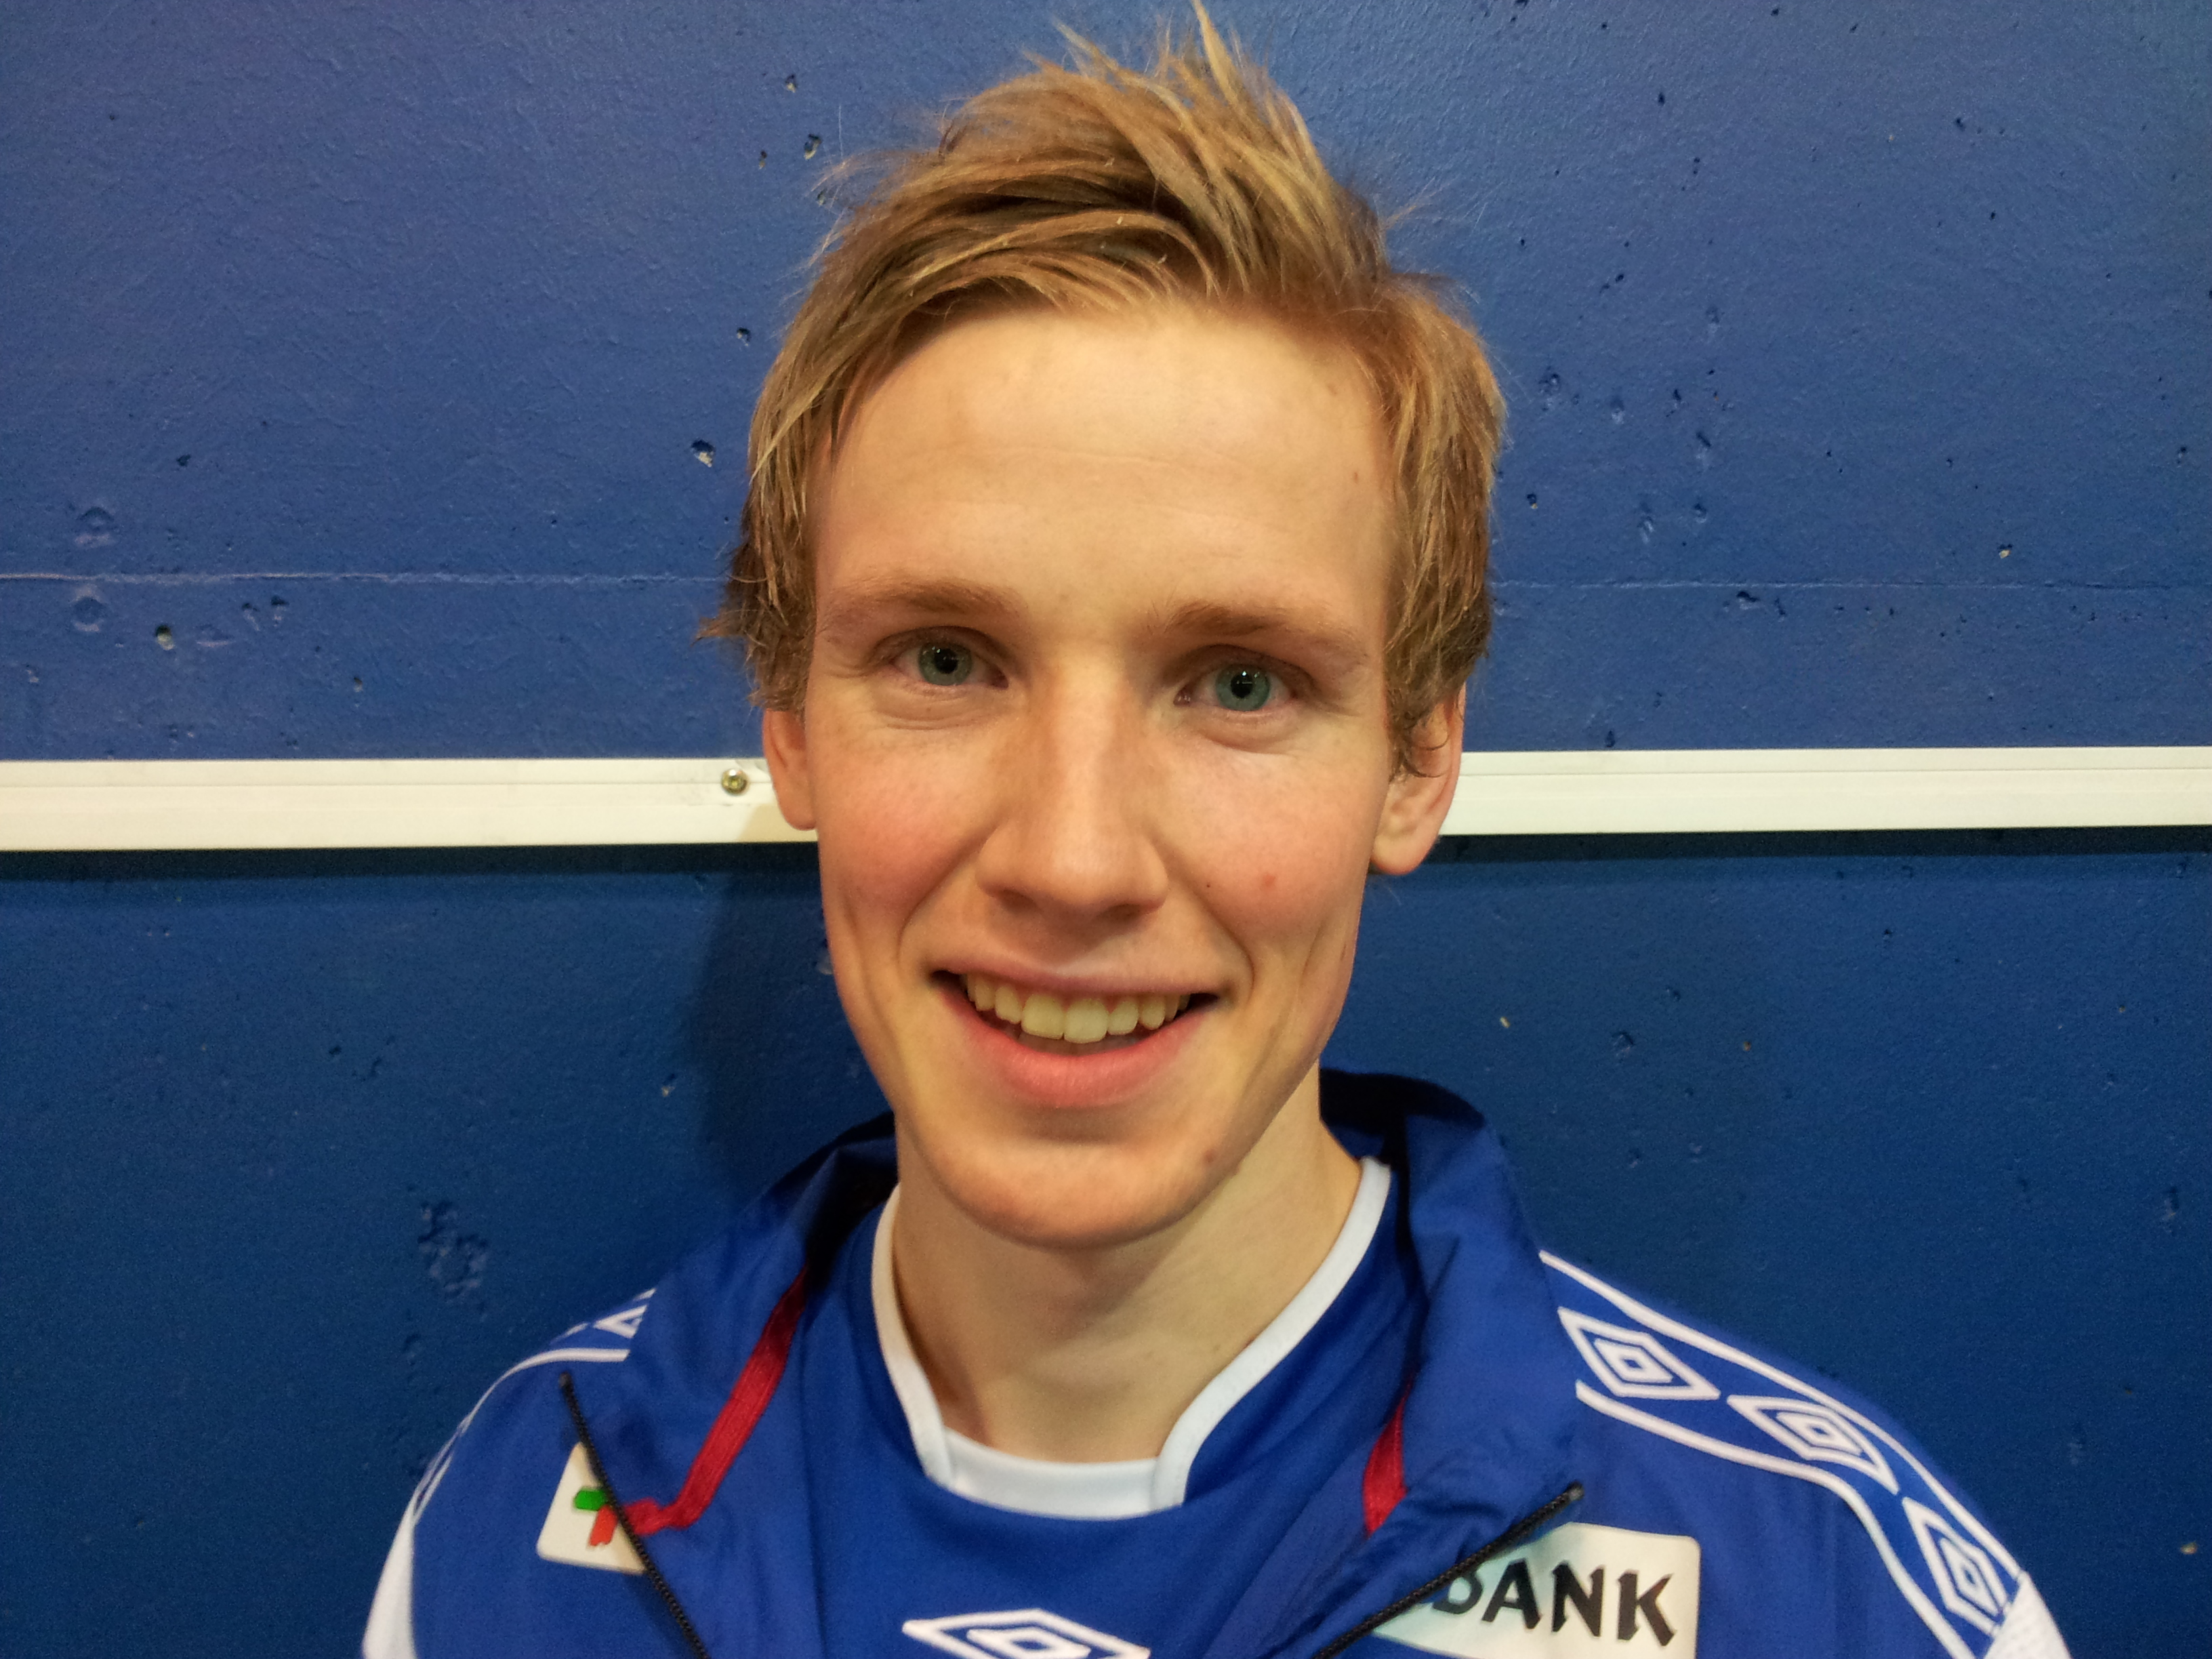 拉森(1988年出生的挪威足球運動員)